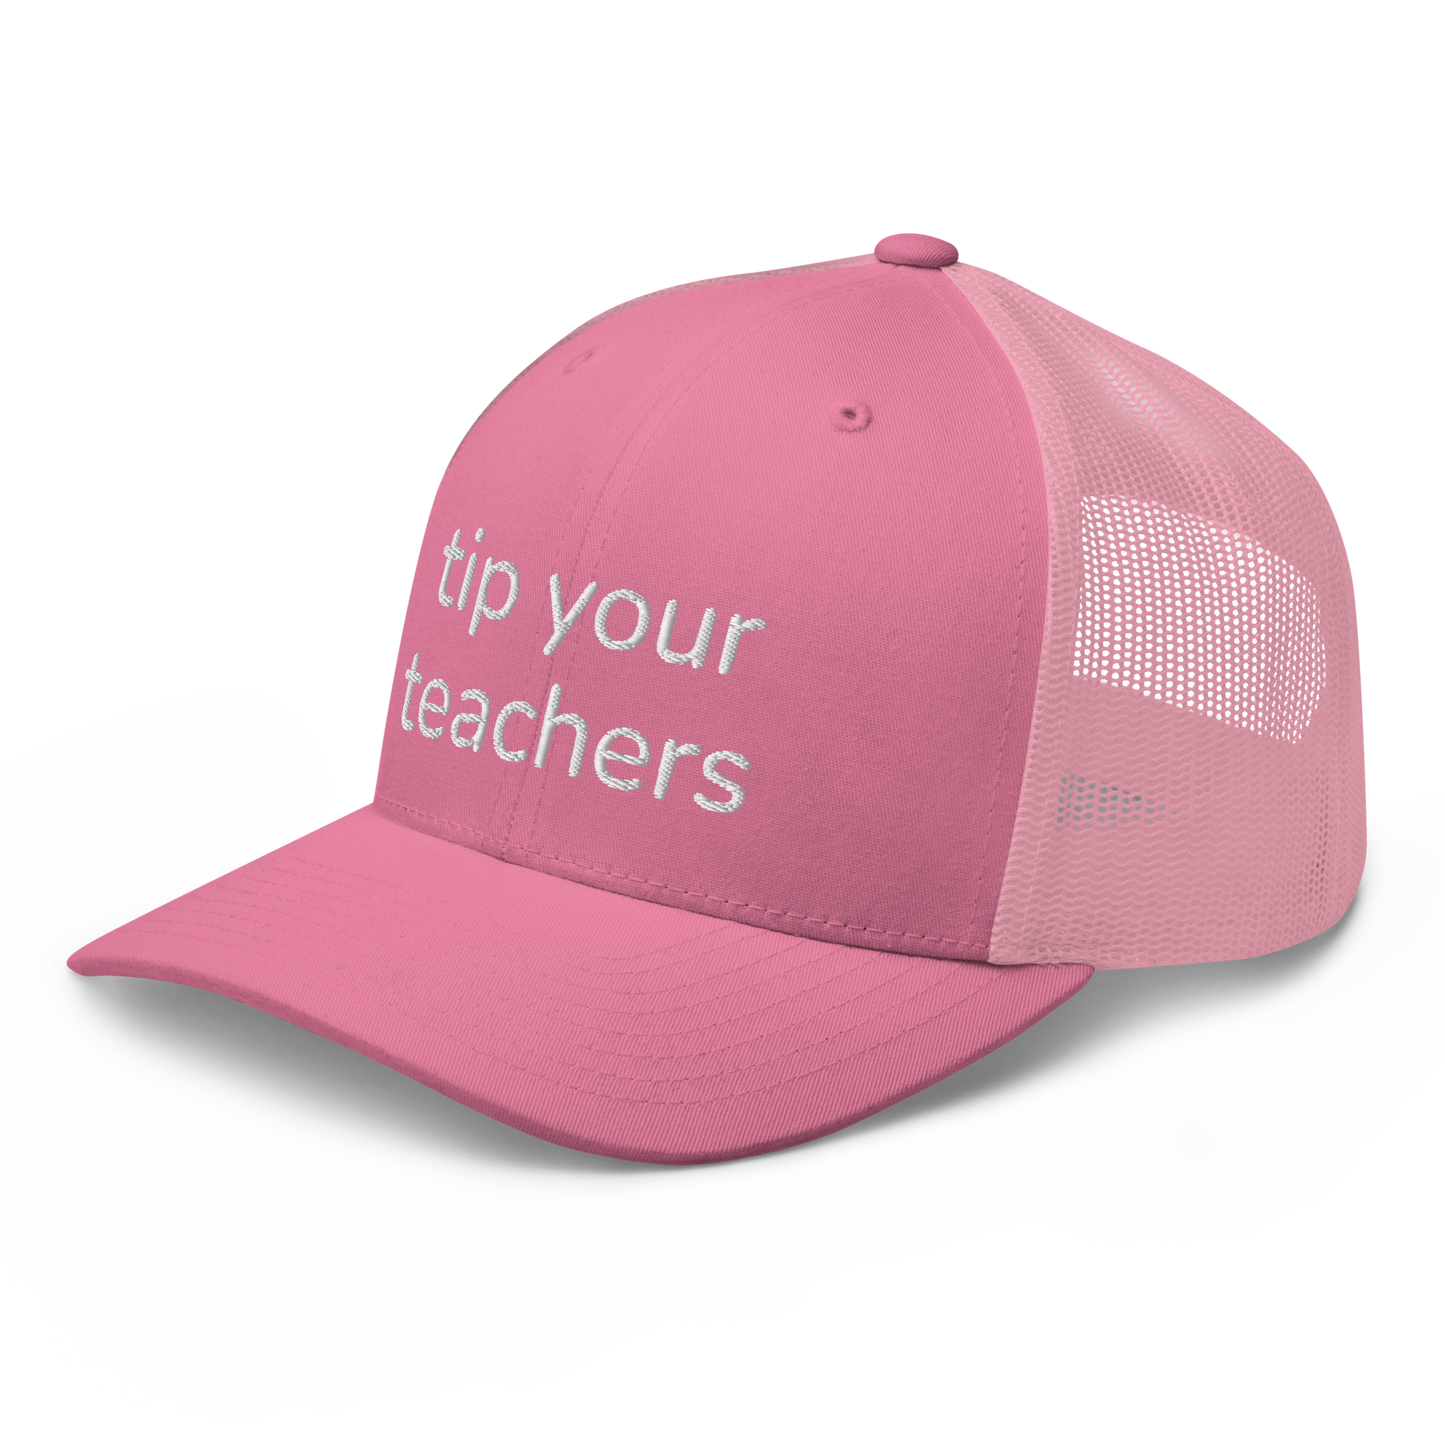 tip your teachers trucker hat